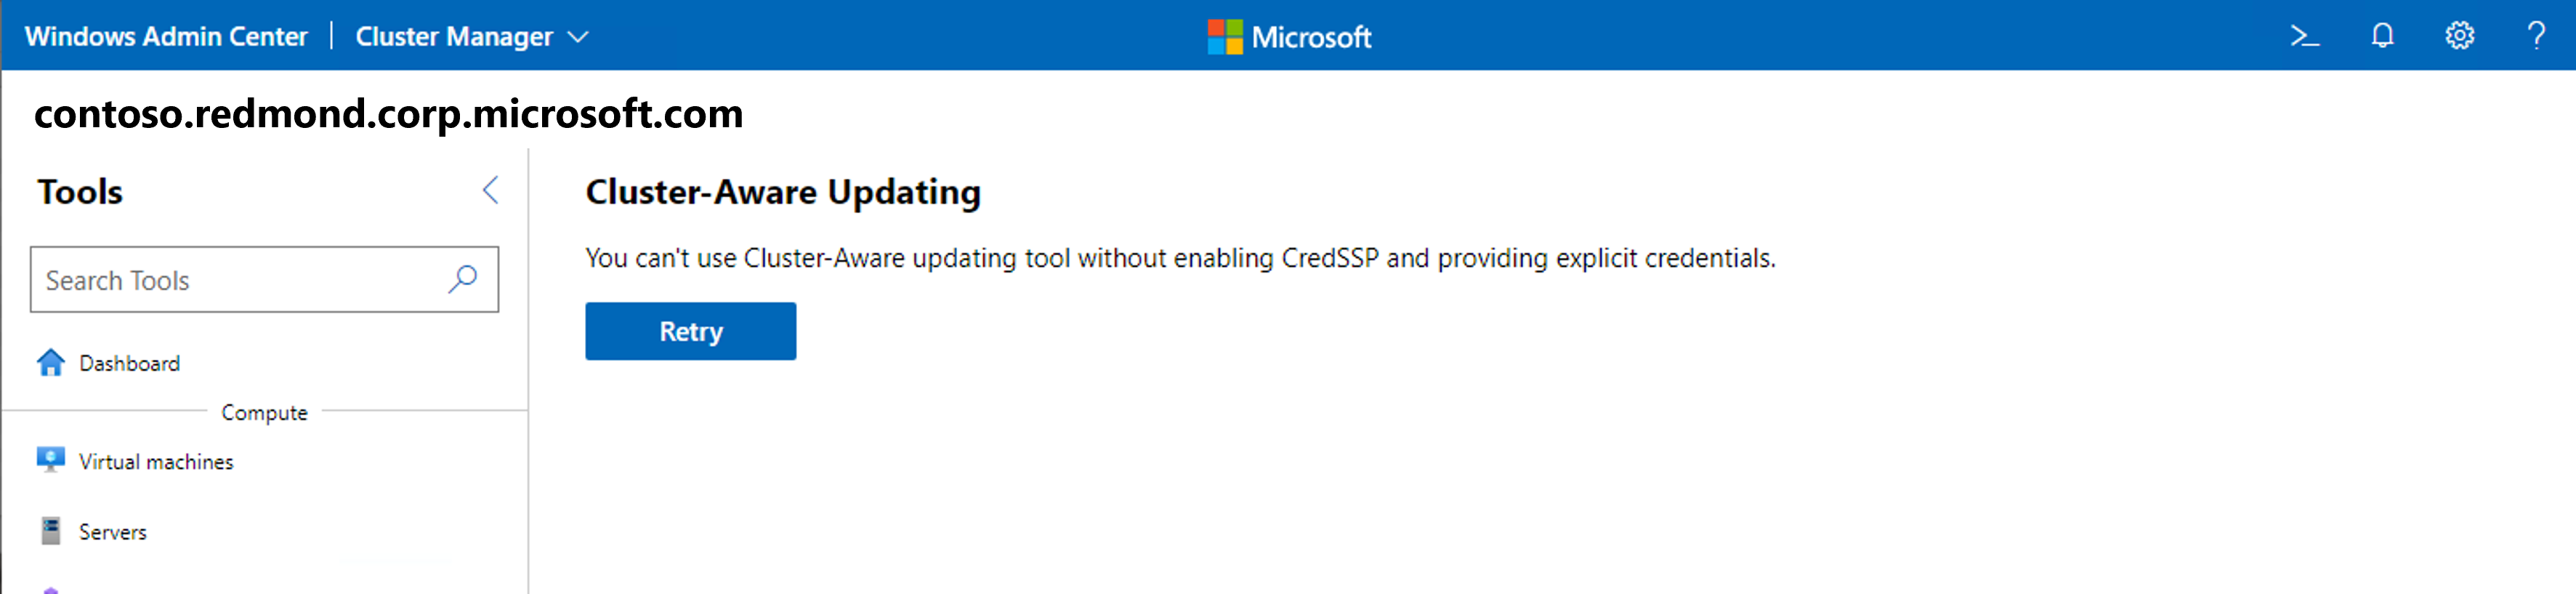 Captura de tela da ferramenta Atualizações usando a atualização com reconhecimento de cluster com erro Cred S S P no Windows Admin Center.